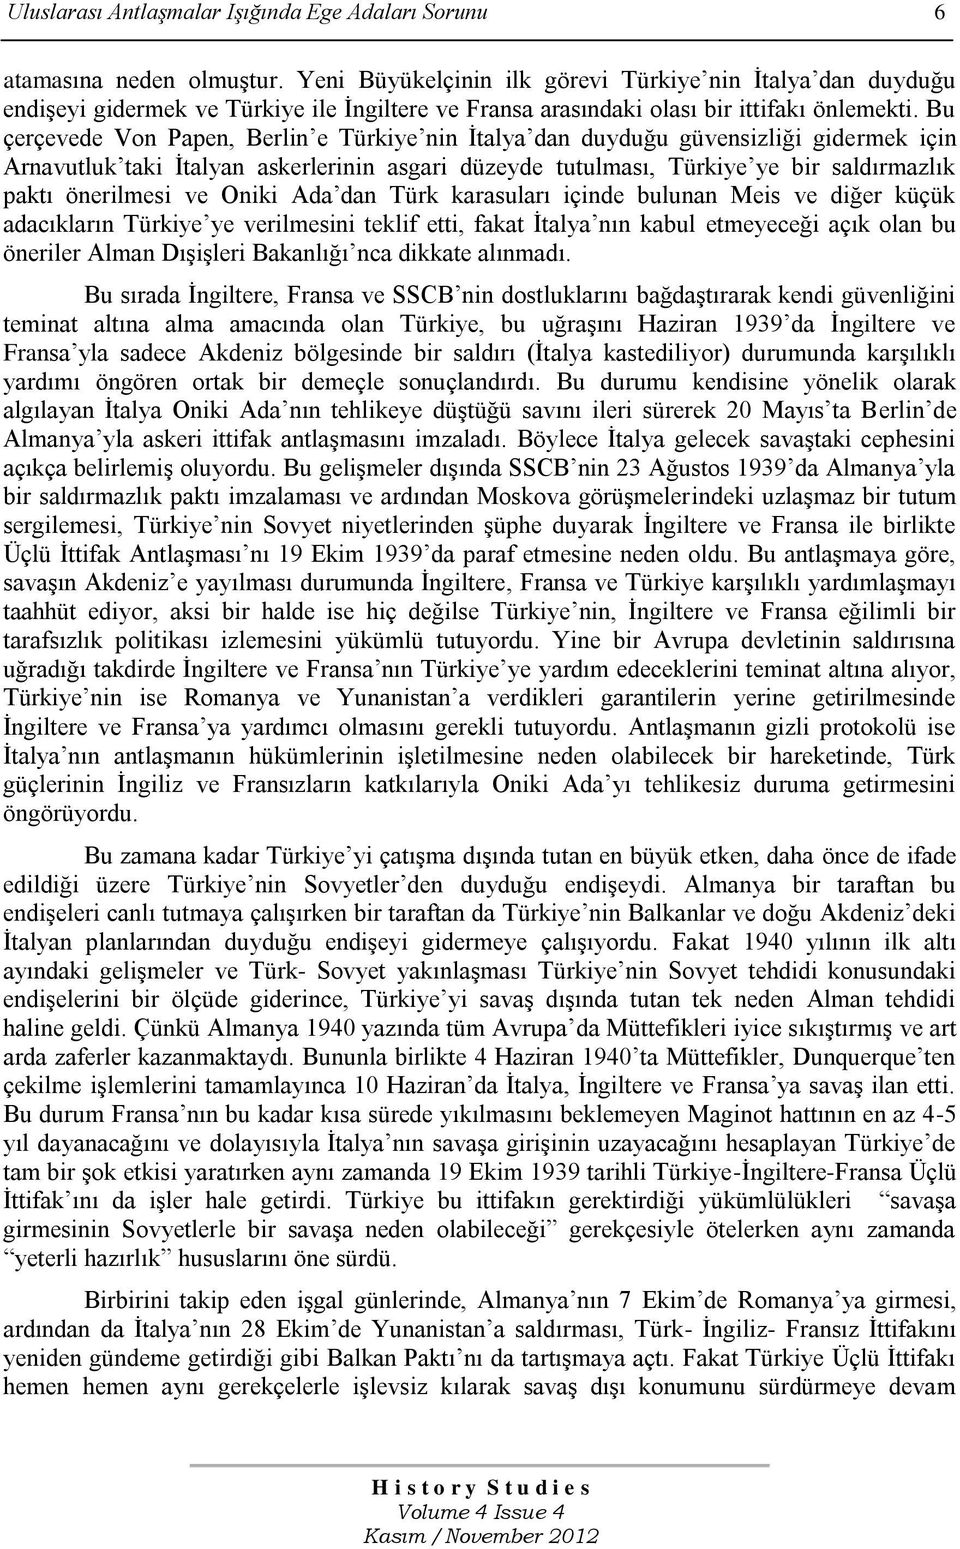 Bu çerçevede Von Papen, Berlin e Türkiye nin Ġtalya dan duyduğu güvensizliği gidermek için Arnavutluk taki Ġtalyan askerlerinin asgari düzeyde tutulması, Türkiye ye bir saldırmazlık paktı önerilmesi